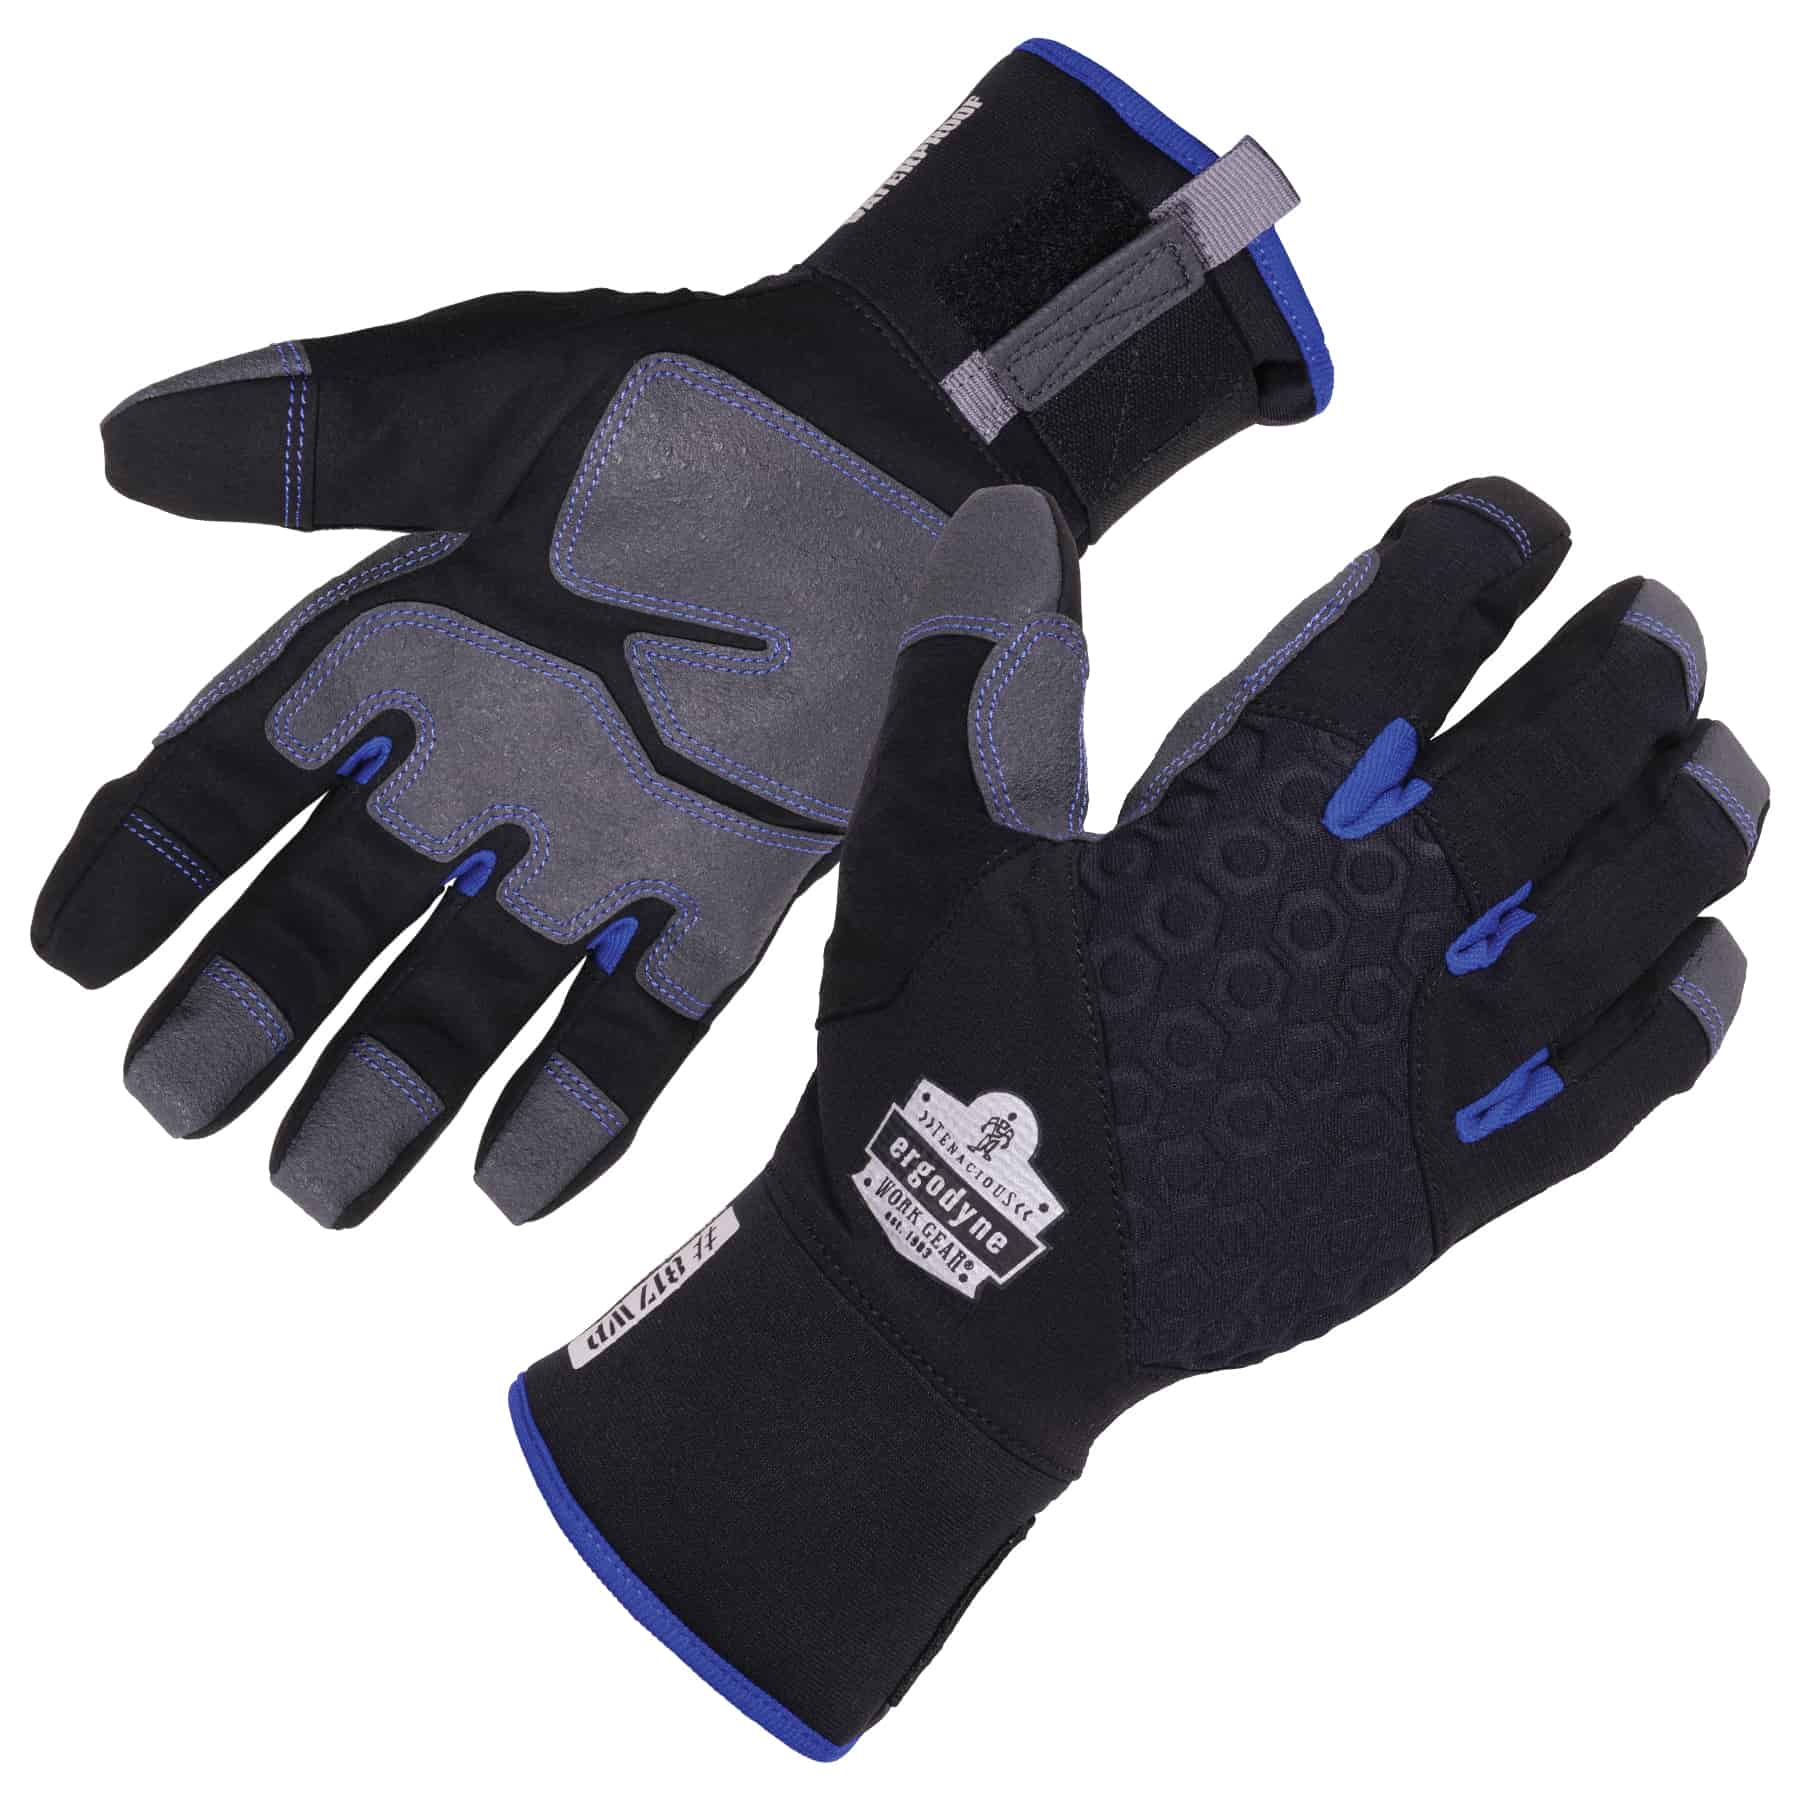 https://www.ergodyne.com/sites/default/files/product-images/817wp-thermal-waterproof-winter-work-gloves-black-pair.jpg